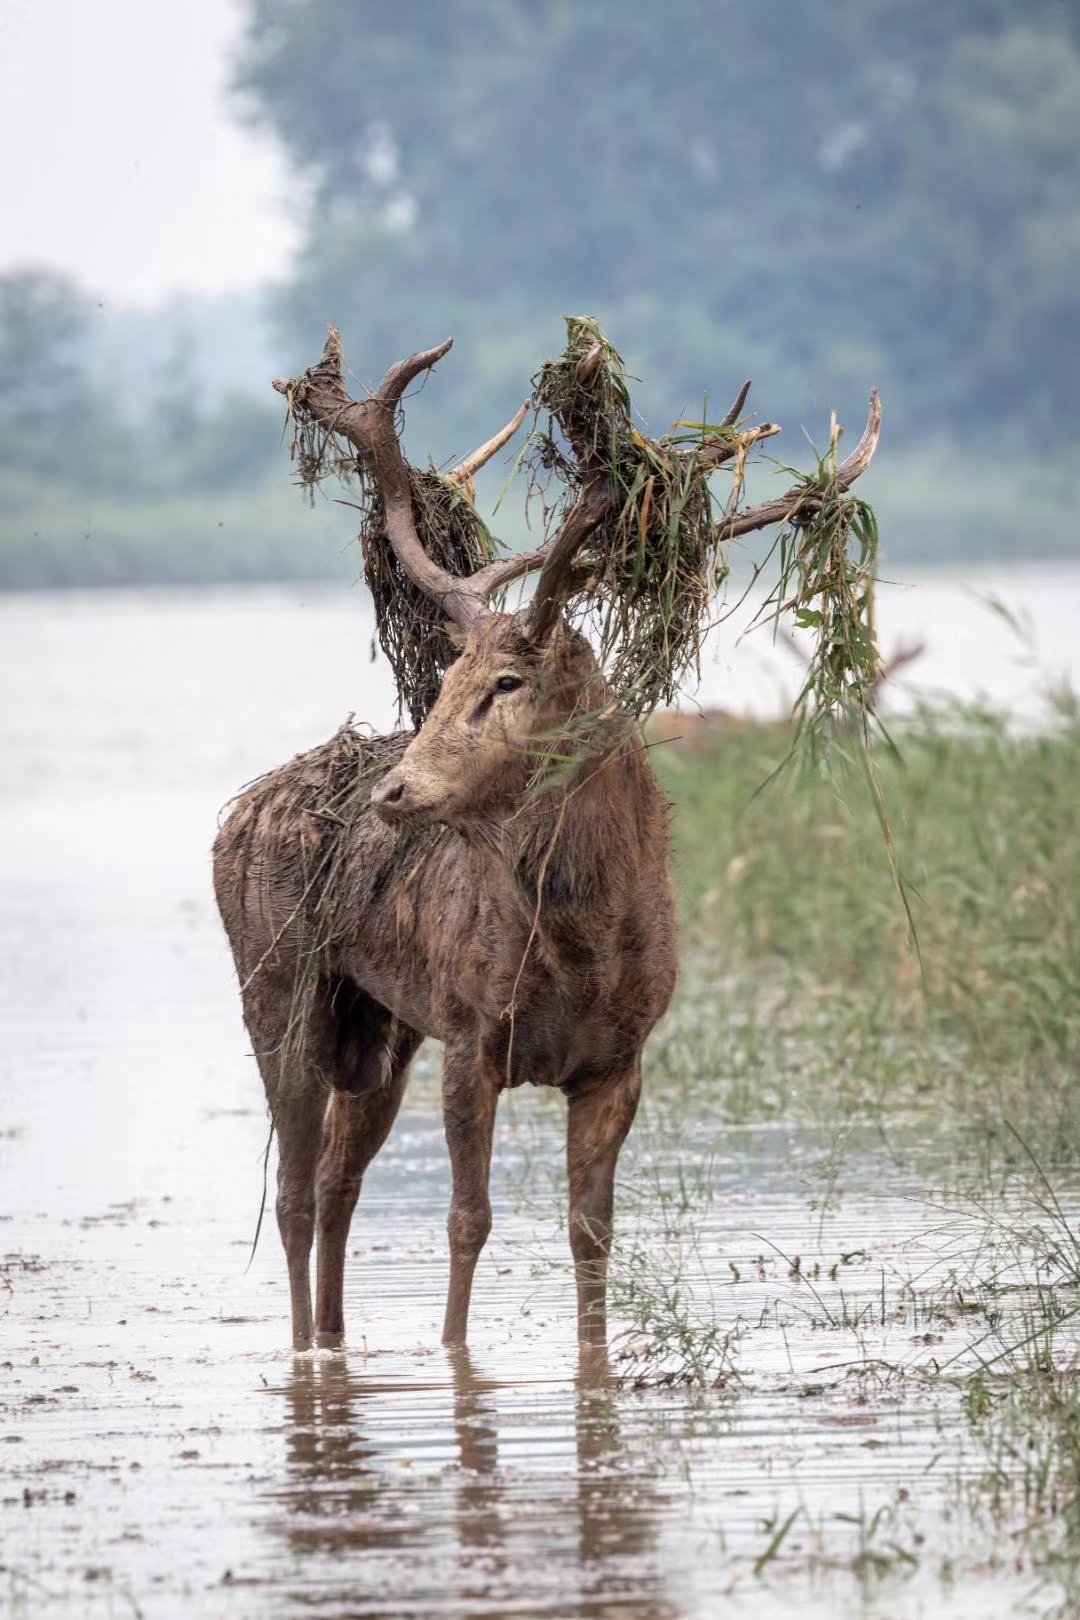 自然与和谐 2019210拍摄于石首麋鹿国家级自然保护区